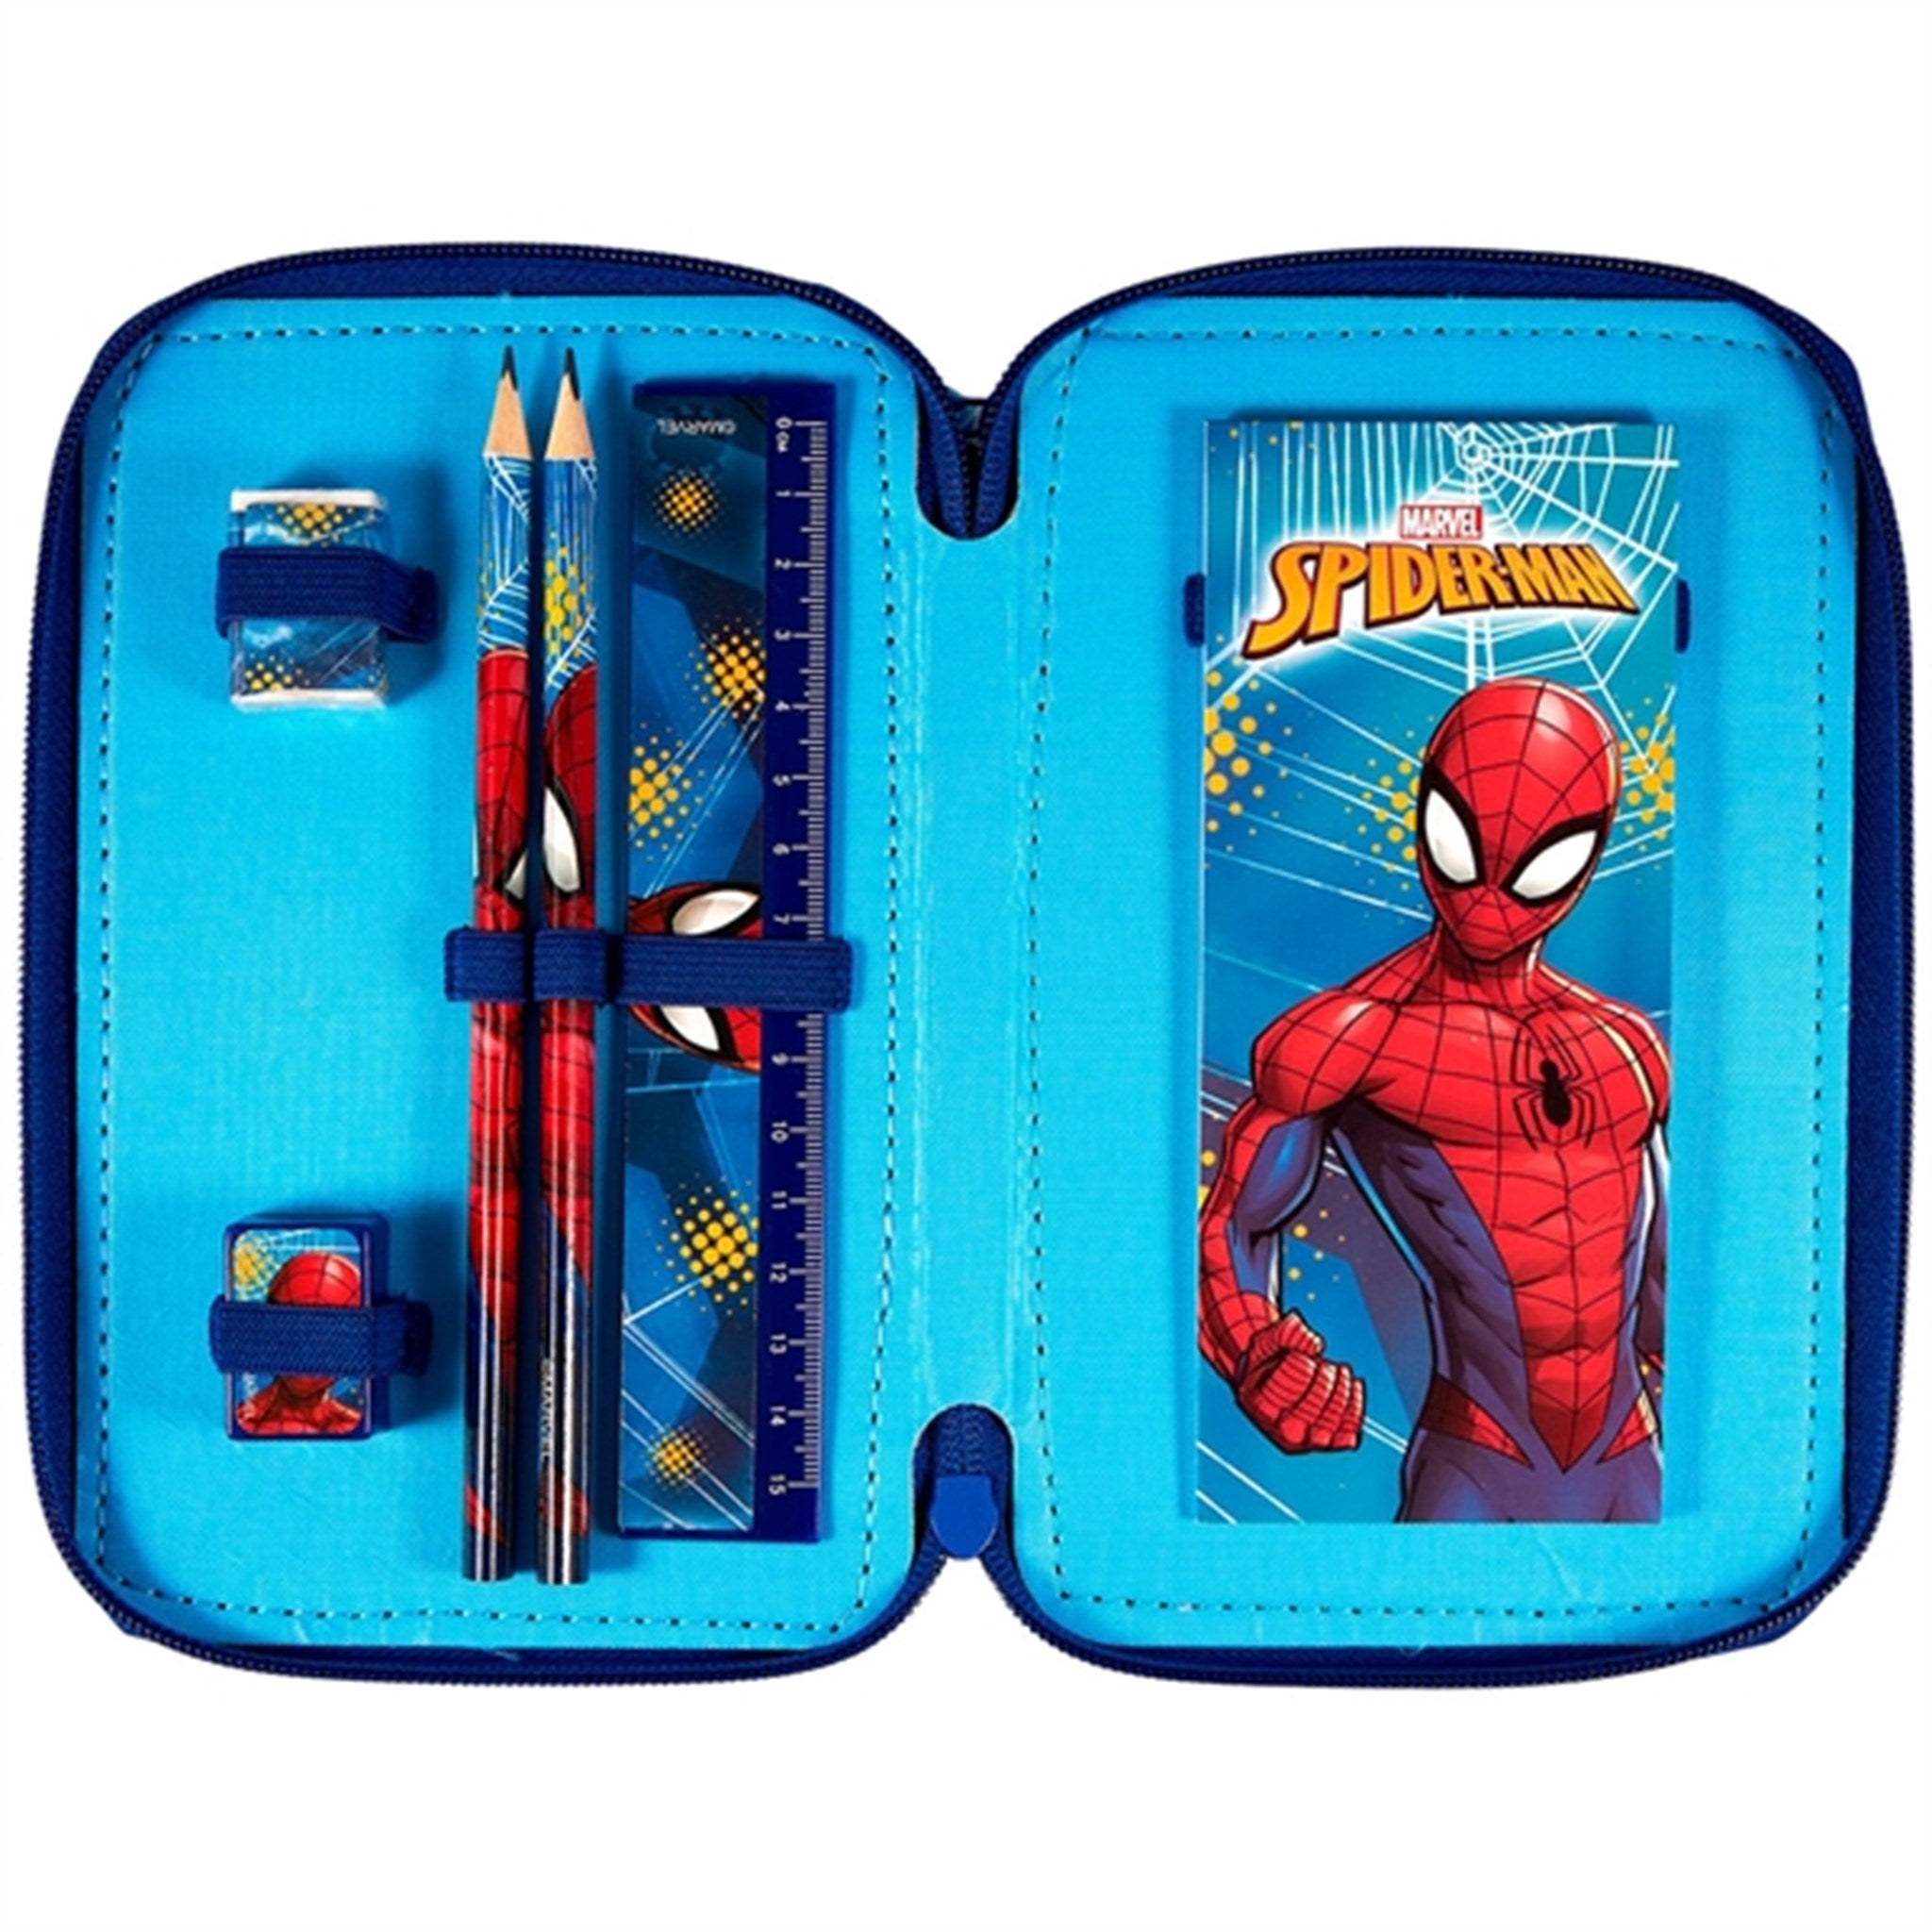 Euromic Spider-Man Pencil Case 2